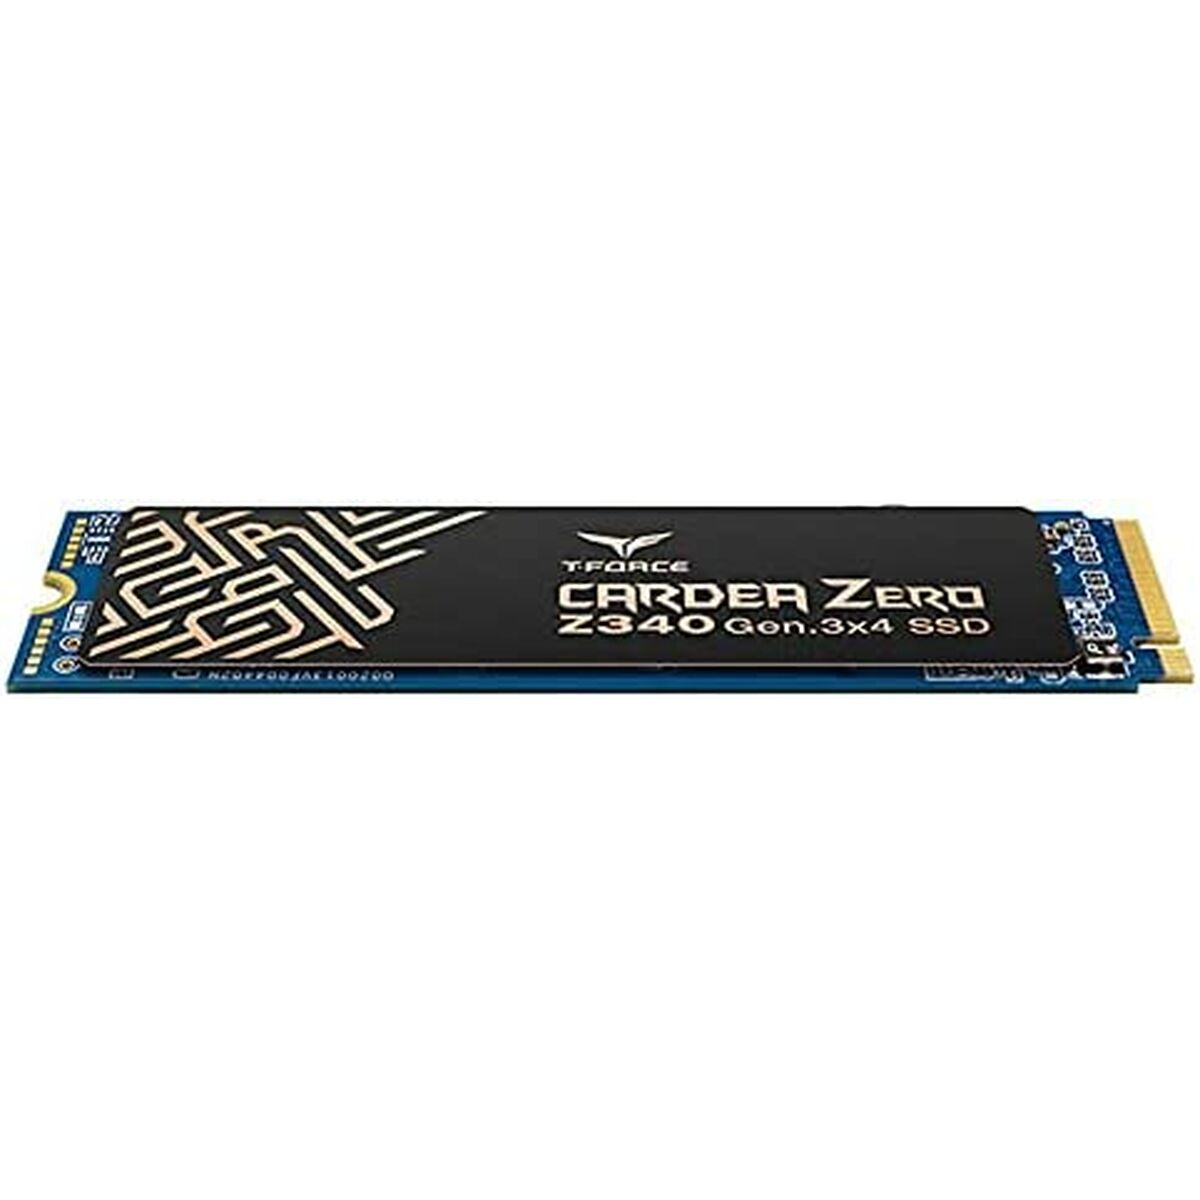 Festplatte Team Group CARDEA ZERO 512 GB SSD